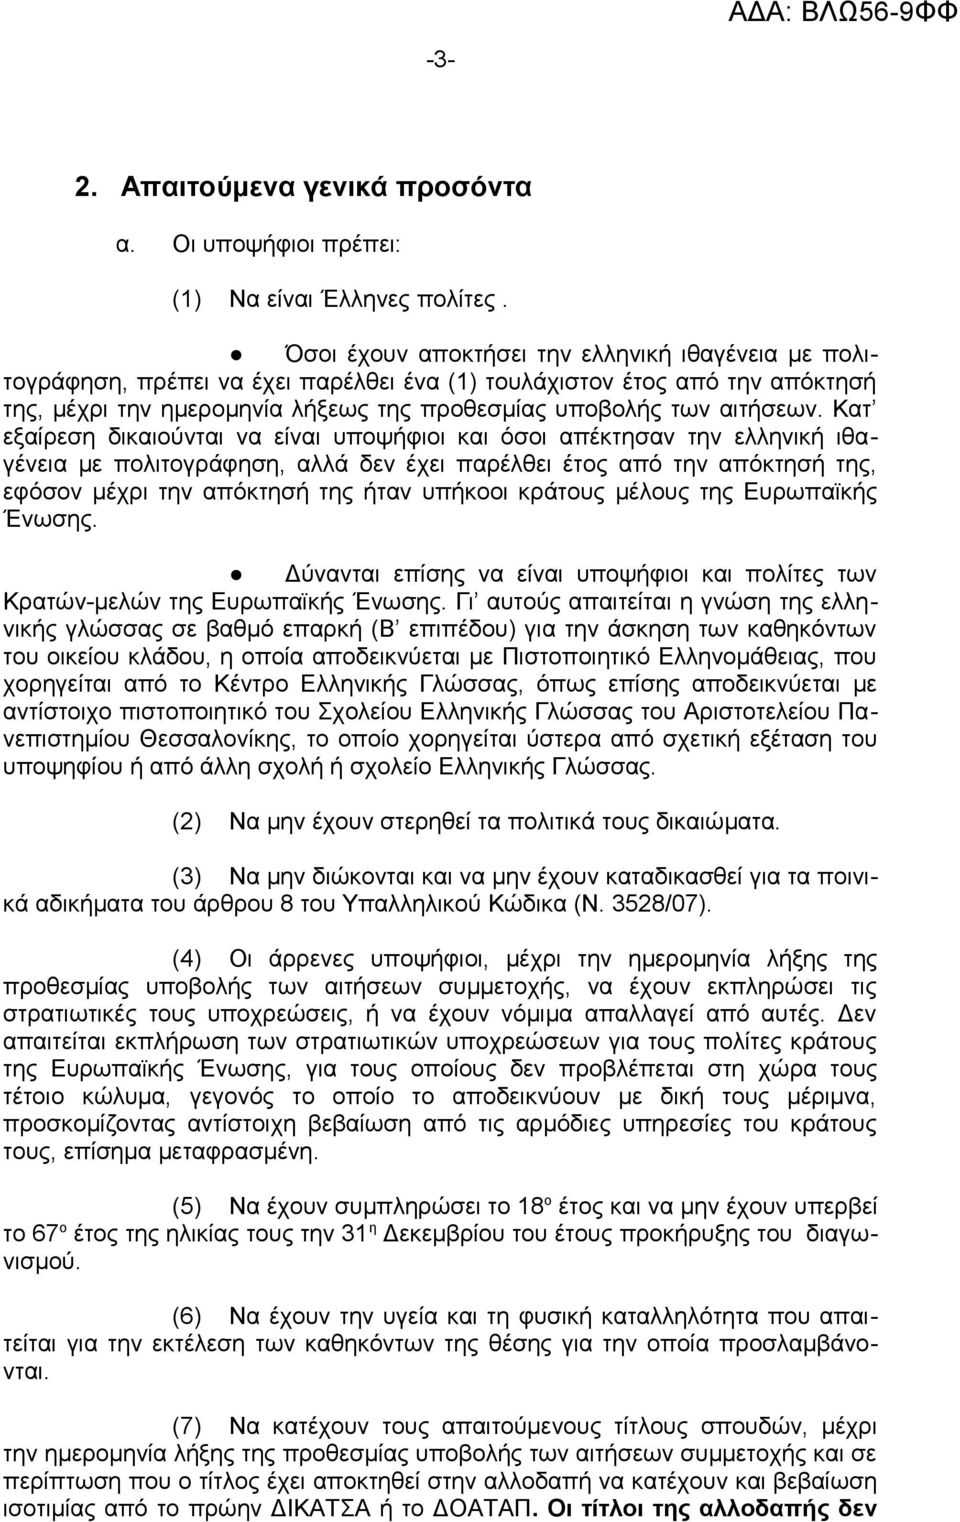 Όσοι έχουν αποκτήσει την ελληνική ιθαγένεια με πολιτογράφηση, πρέπει να έχει παρέλθει ένα (1) τουλάχιστον έτος από την απόκτησή της, μέχρι την ημερομηνία λήξεως της προθεσμίας υποβολής των αιτήσεων.